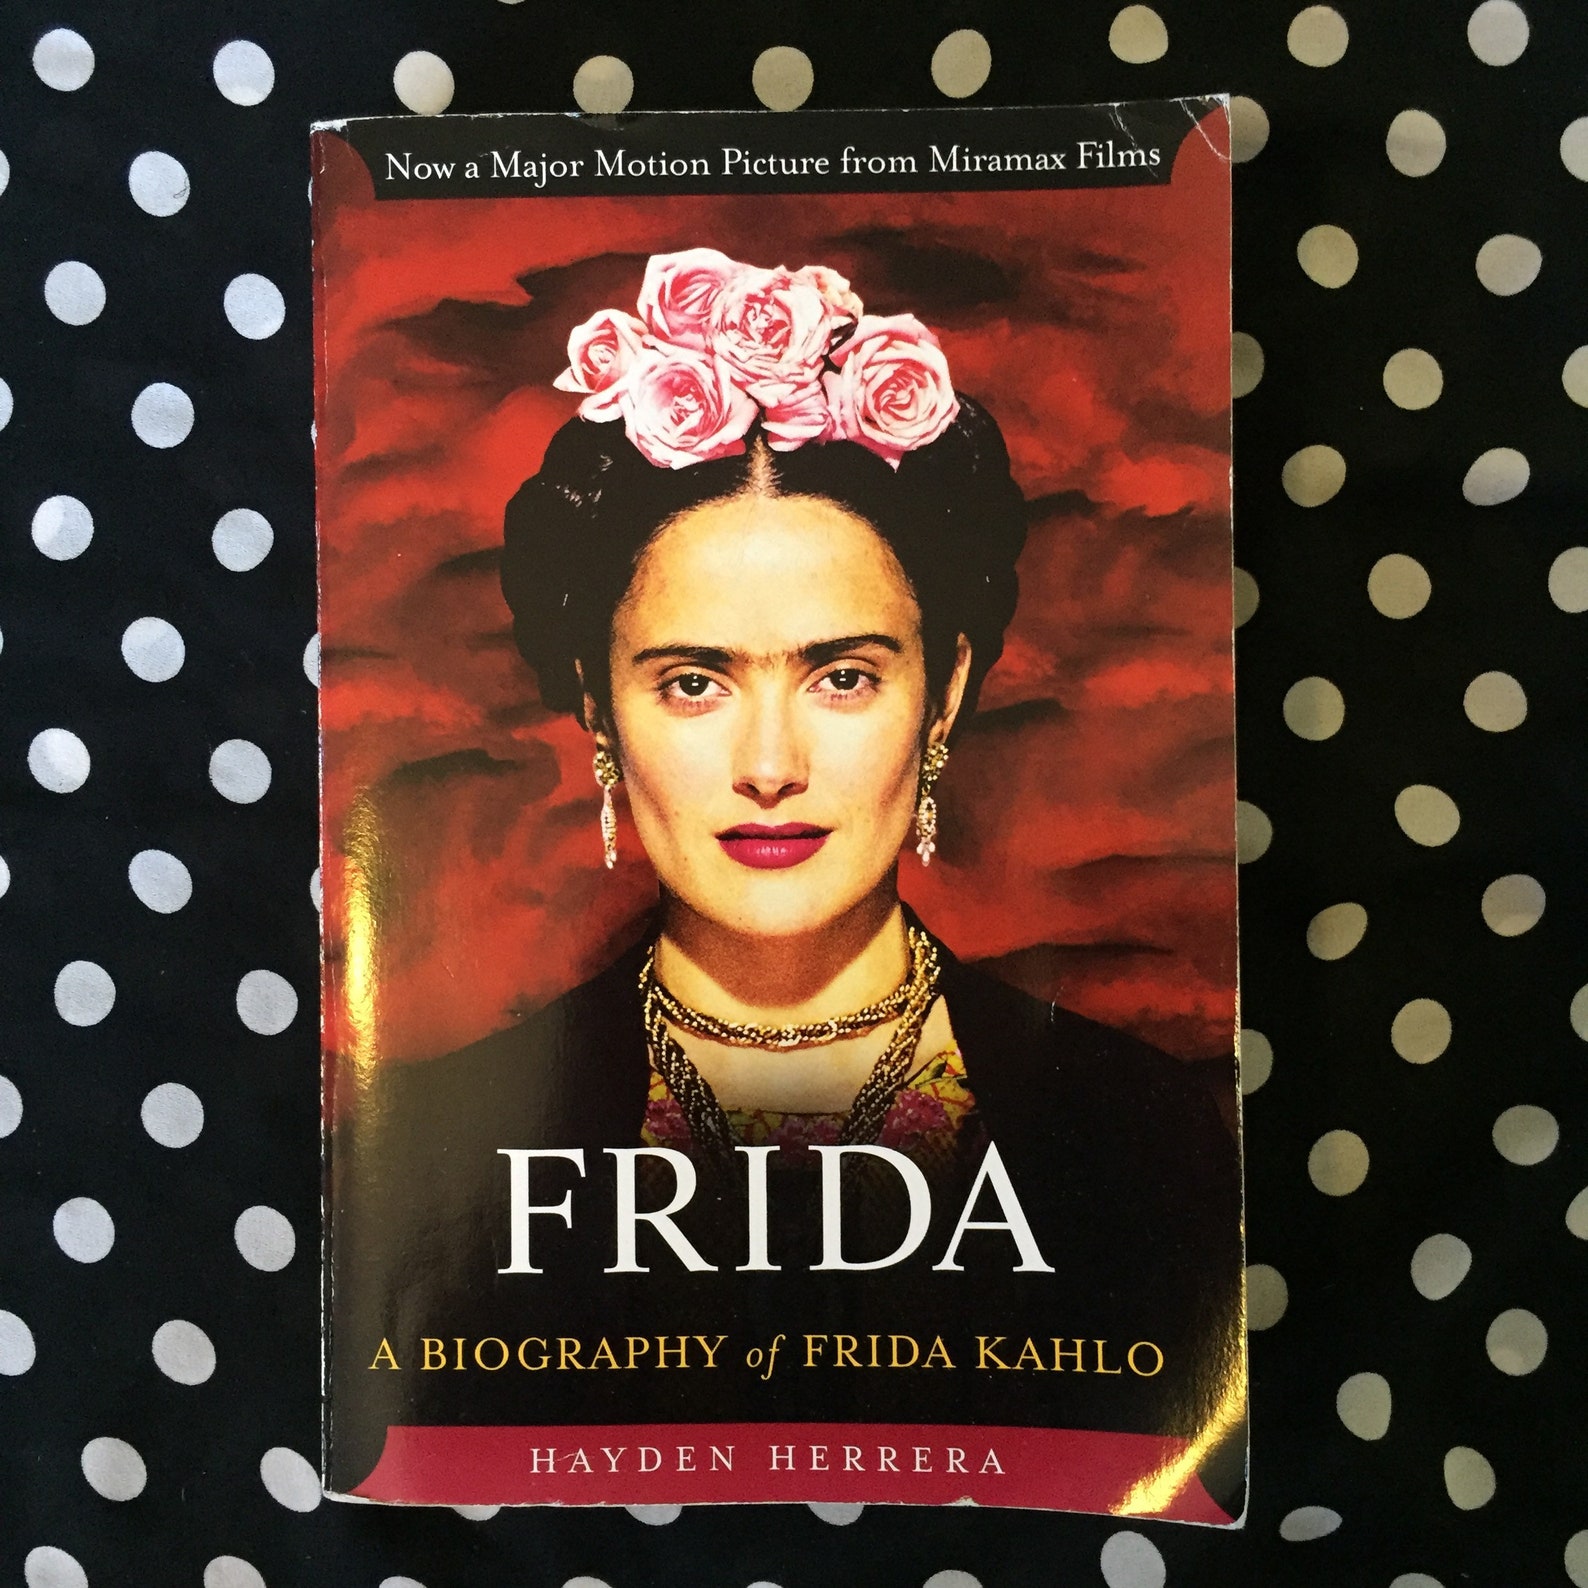 a short biography of frida kahlo